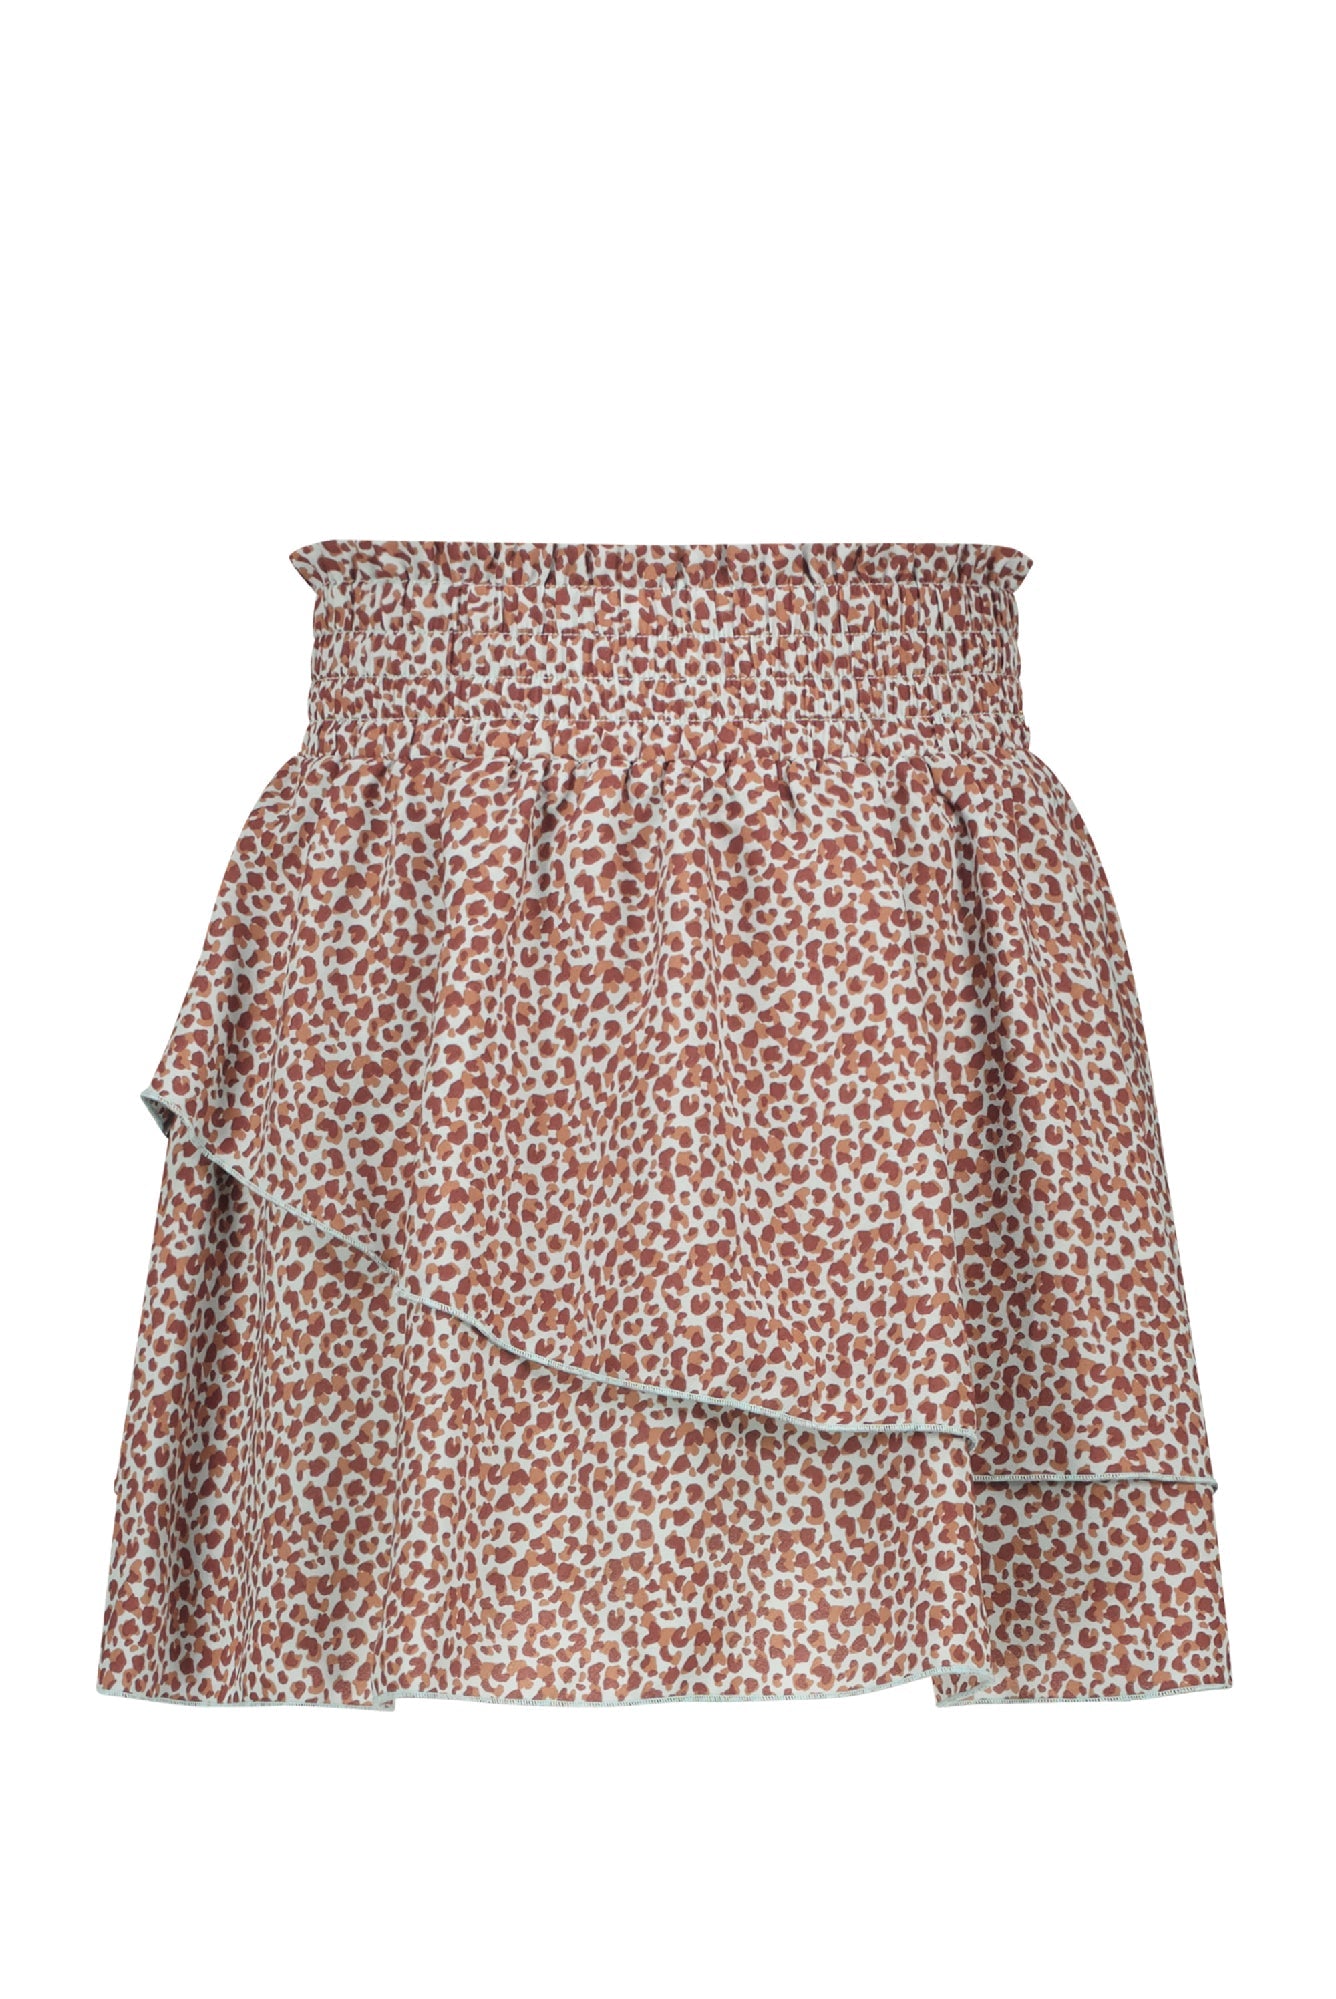 Meisjes Nada short layered skirt with short lining van NoBell in de kleur Spa Blue in maat 170-176.